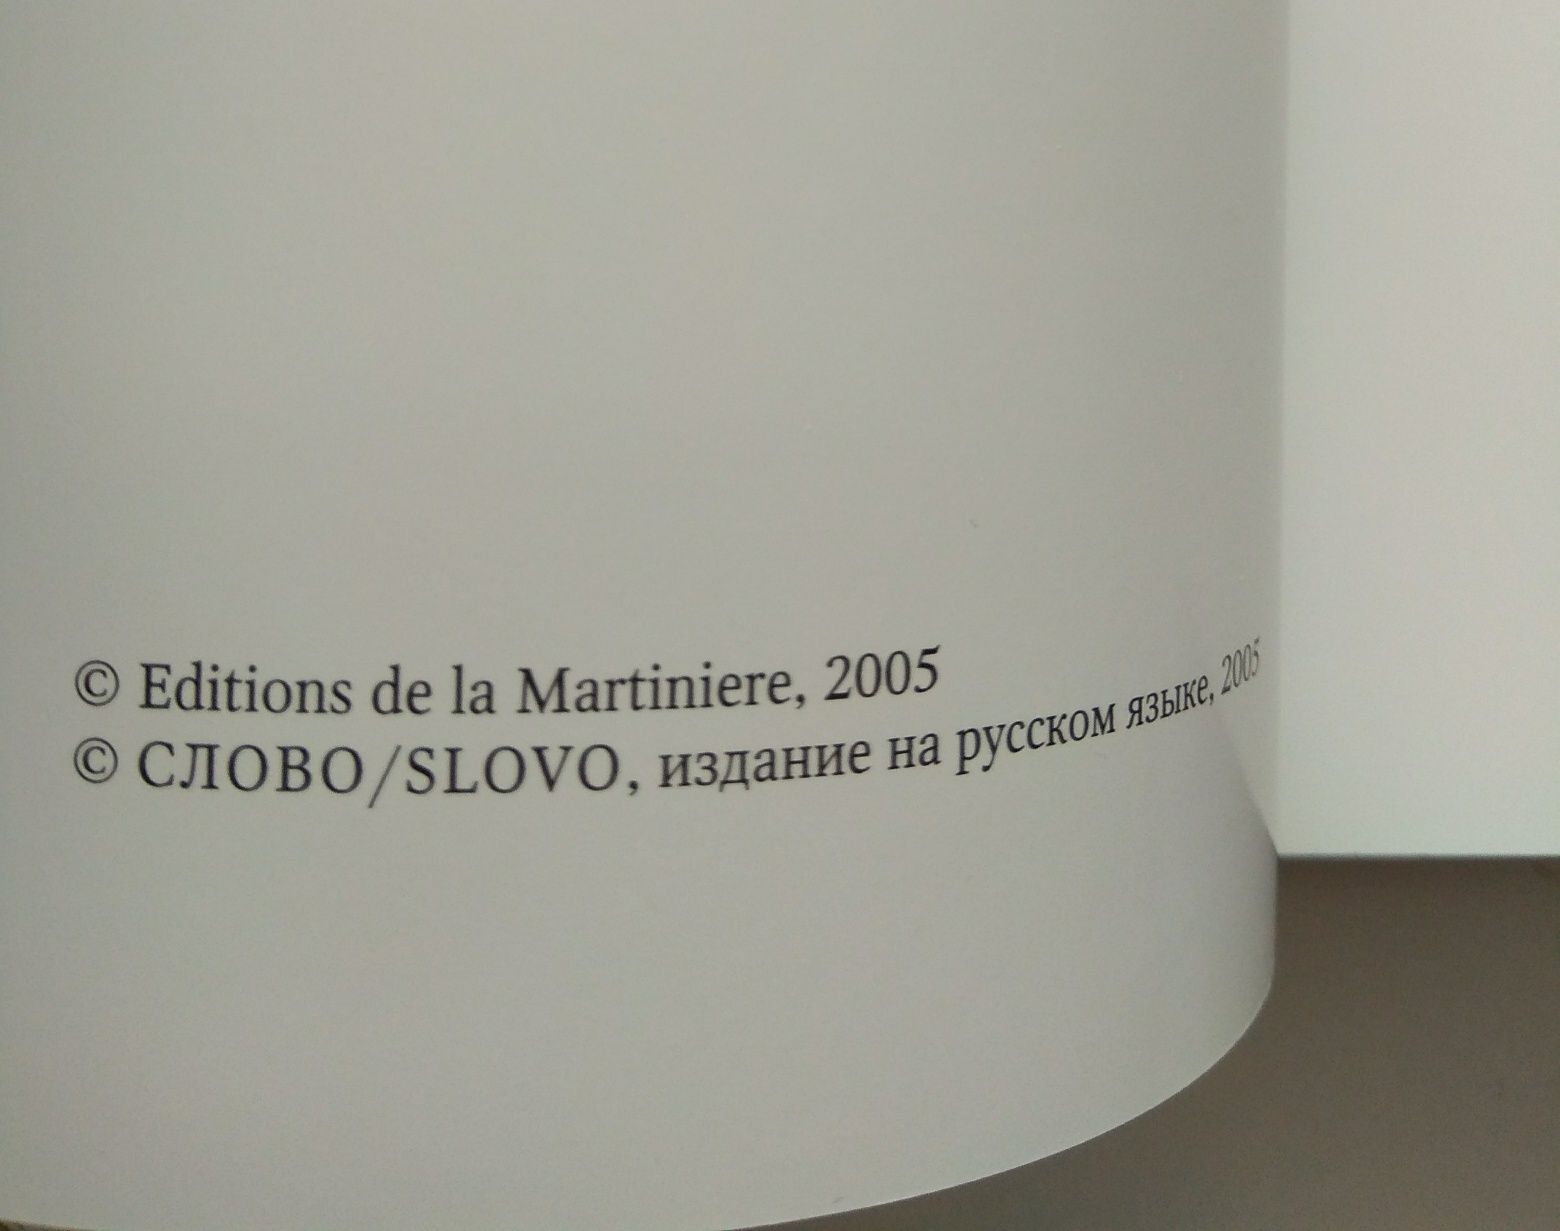 Louis Vuitton Поль-Жерар Пазоль "Луи Вюиттон: империя роскоши"